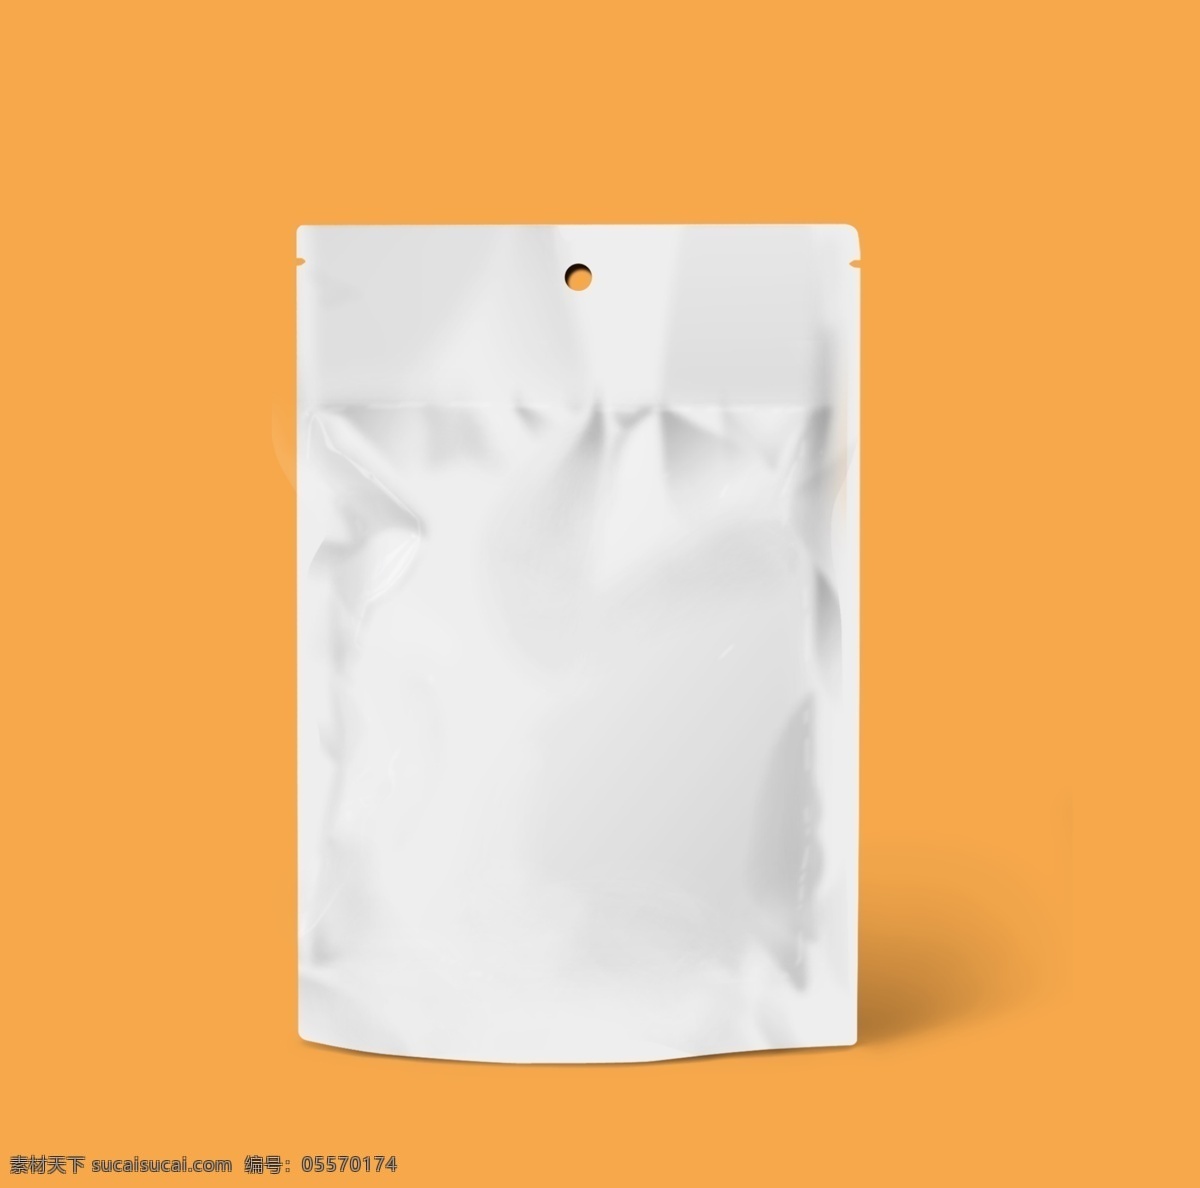 休闲食品 零食 包装 效果图 模板 食品包装 样机 膨化食品 密封袋 塑料袋 纸质袋效果图 简约 分层